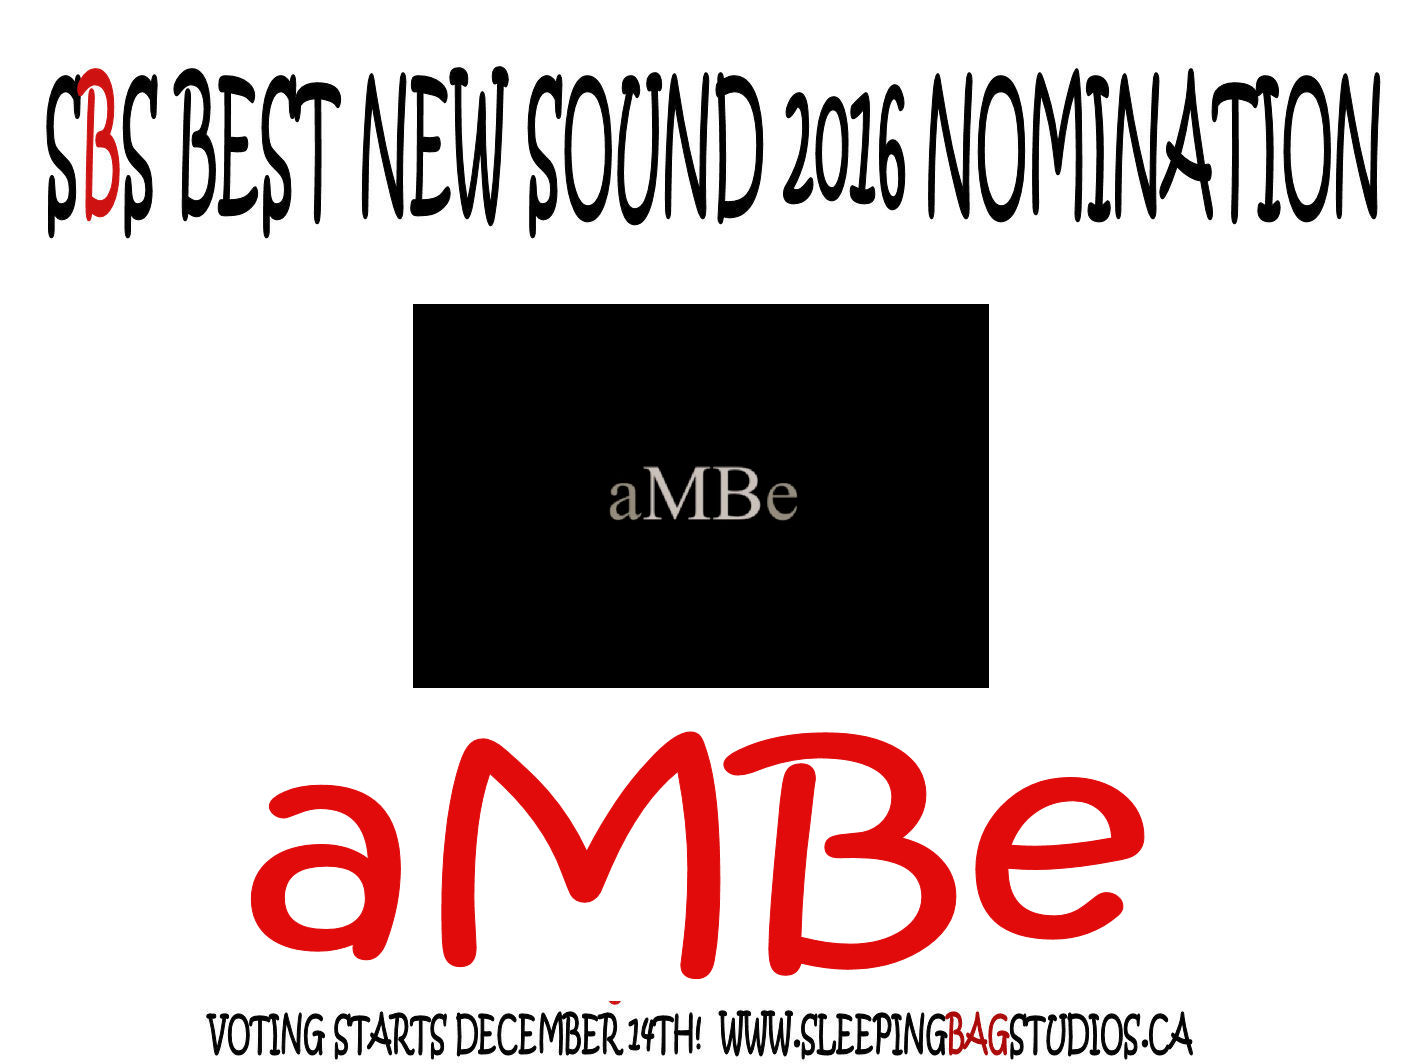  Best New Sound 2016 Nomination:  åMBe